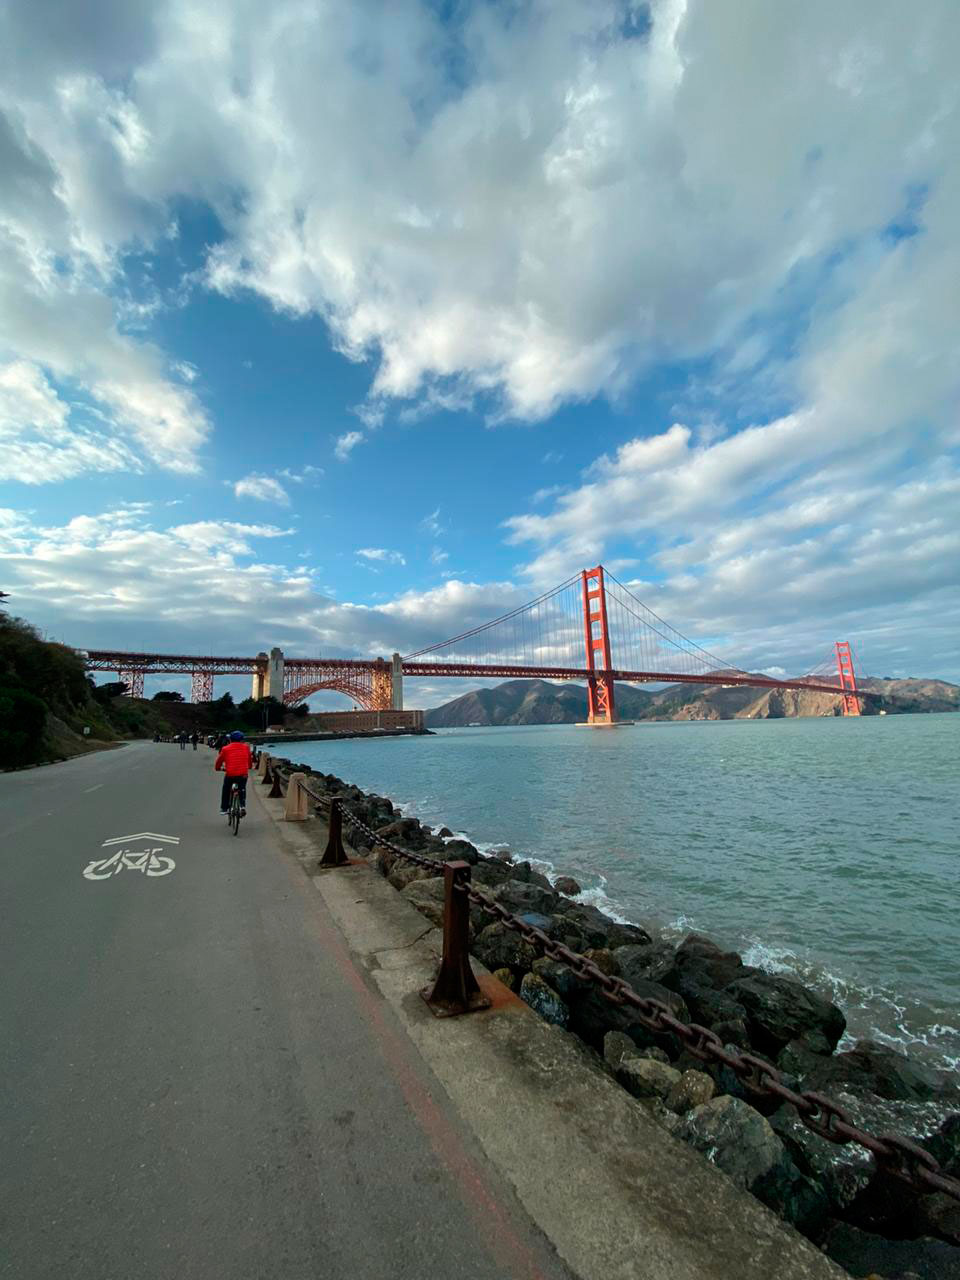 bicicleta Golden Gate San Francisco